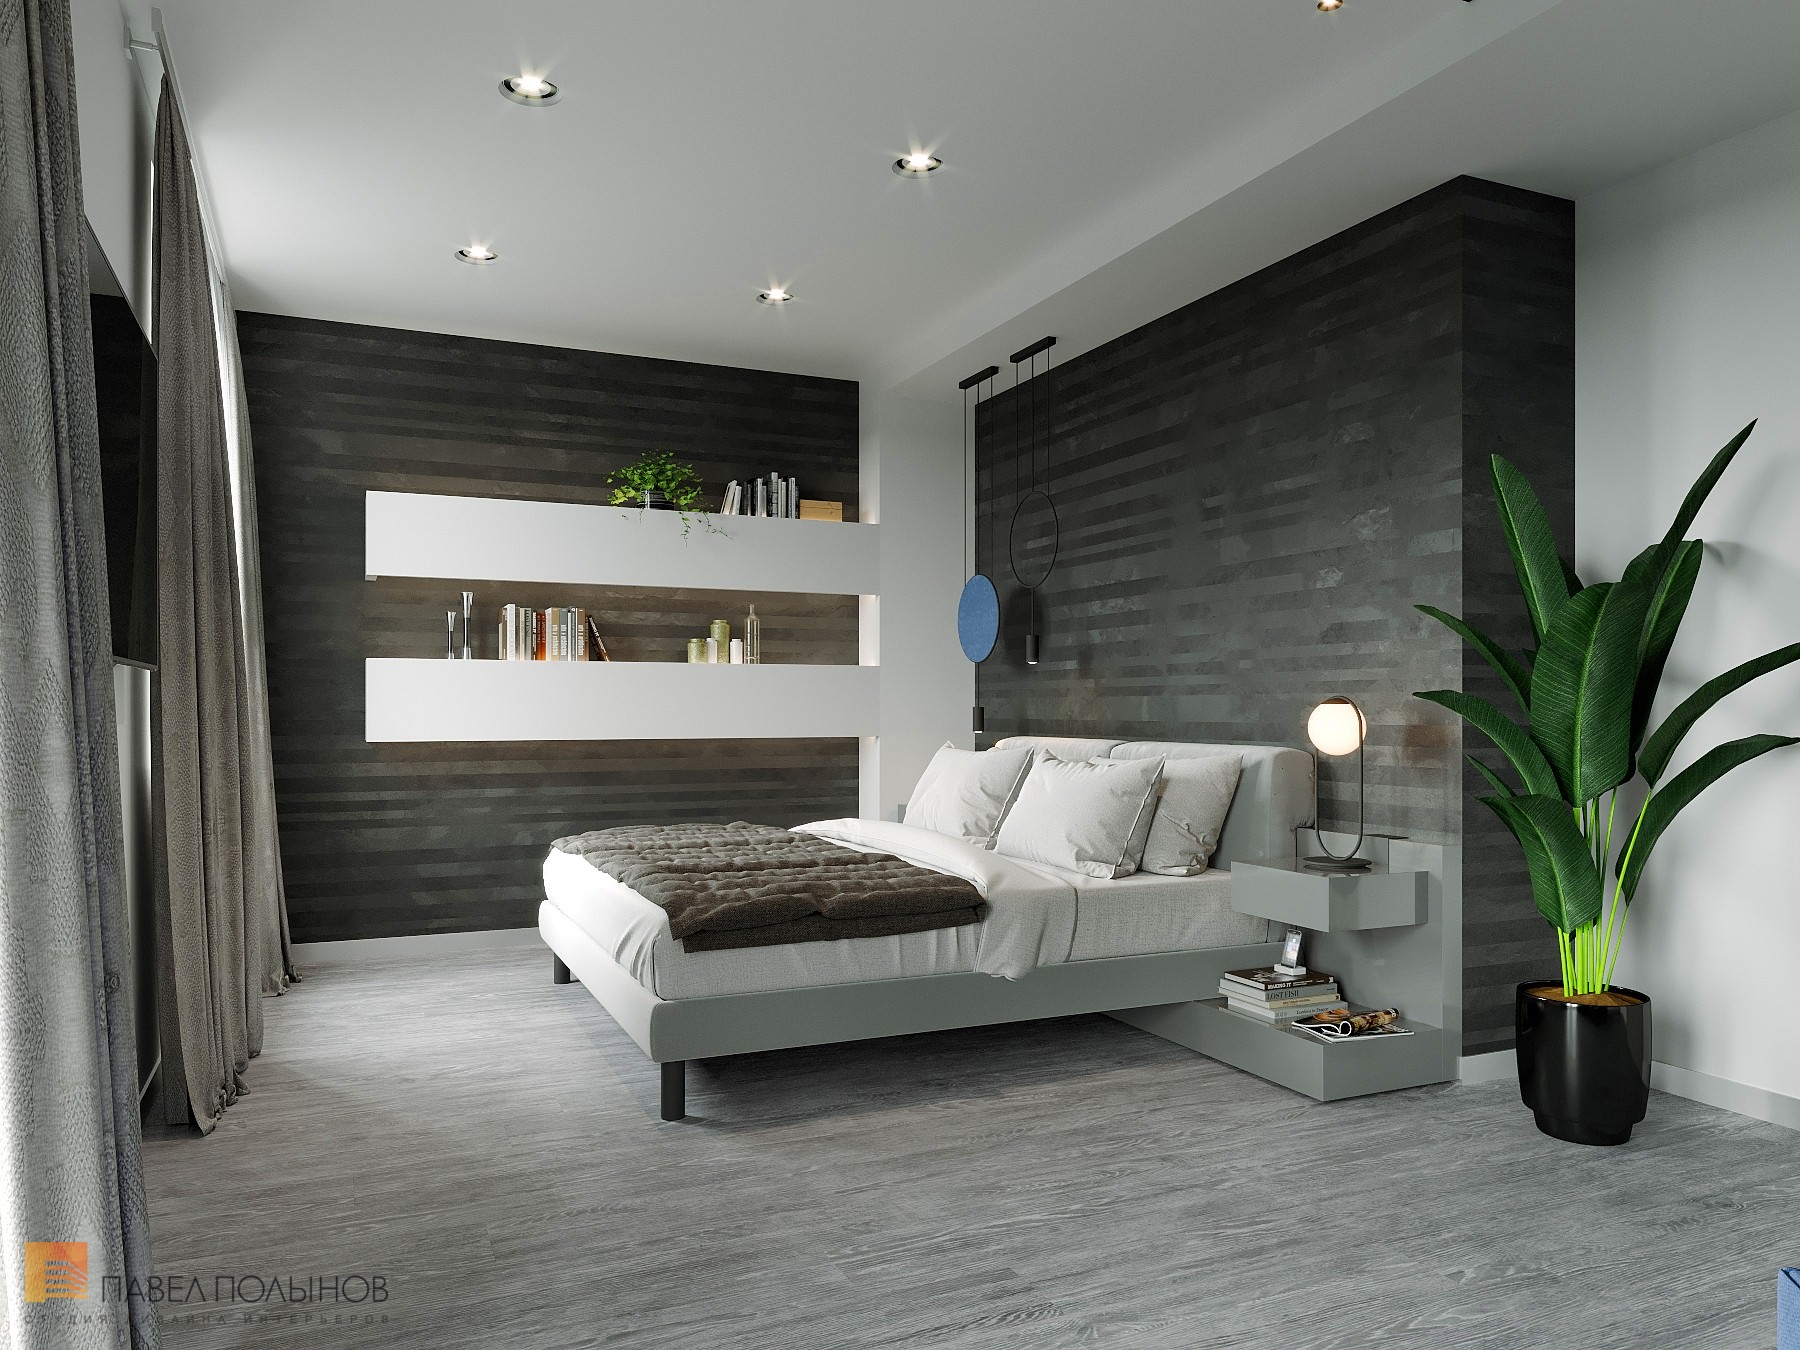 Фото дизайн спальни из проекта «Дизайн интерьер квартиры в ЖК «Кремлевские звезды», современный стиль, 133 кв.м.»